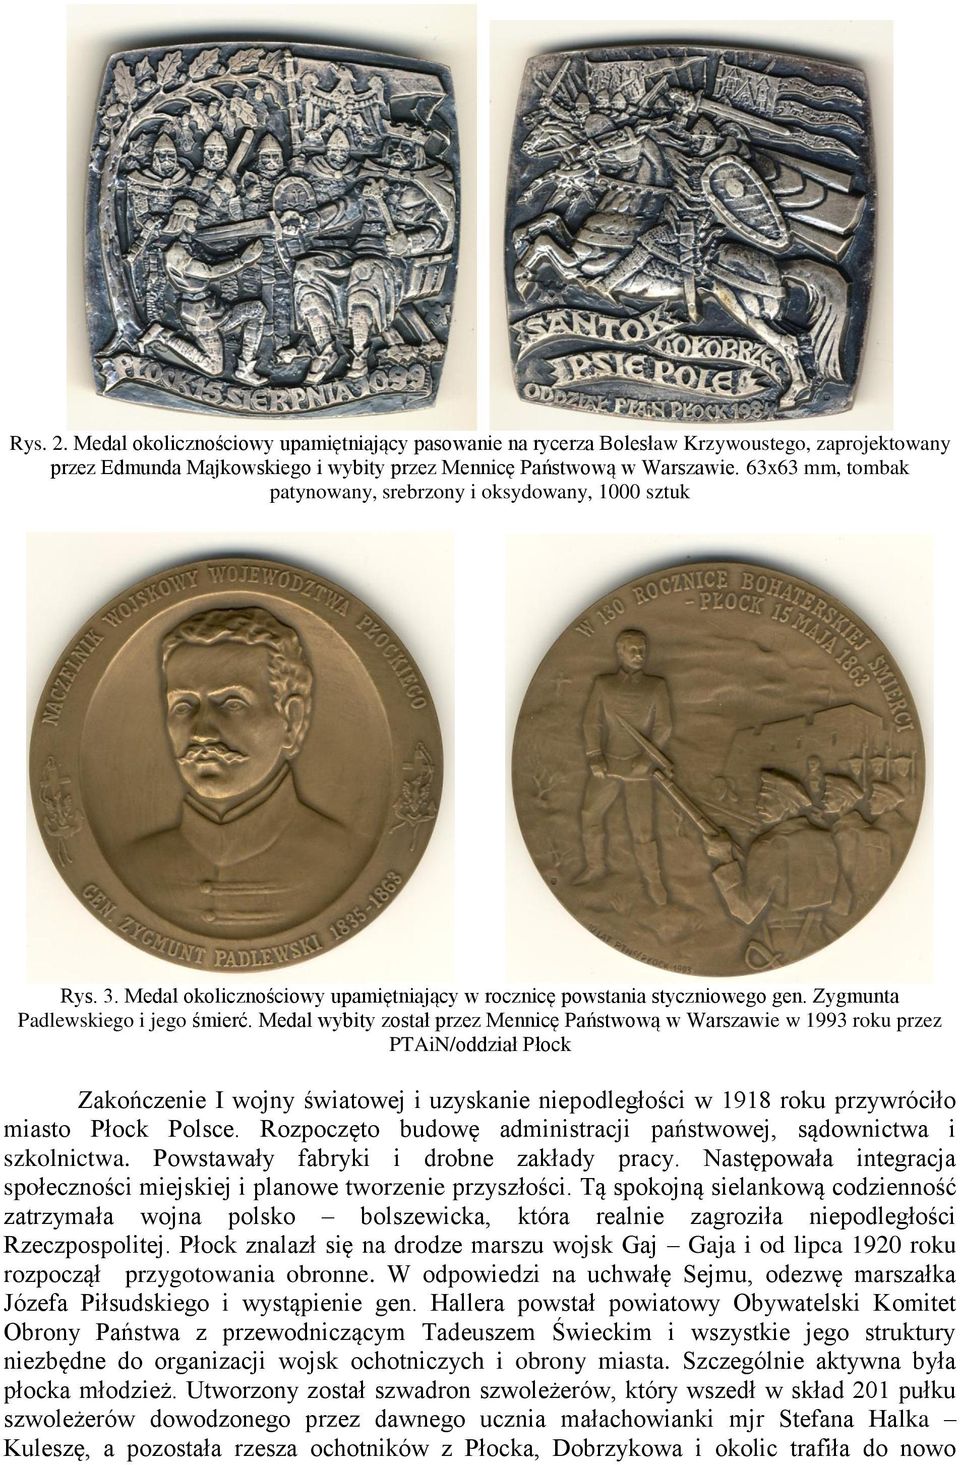 Medal wybity został przez Mennicę Państwową w Warszawie w 1993 roku przez PTAiN/oddział Płock Zakończenie I wojny światowej i uzyskanie niepodległości w 1918 roku przywróciło miasto Płock Polsce.